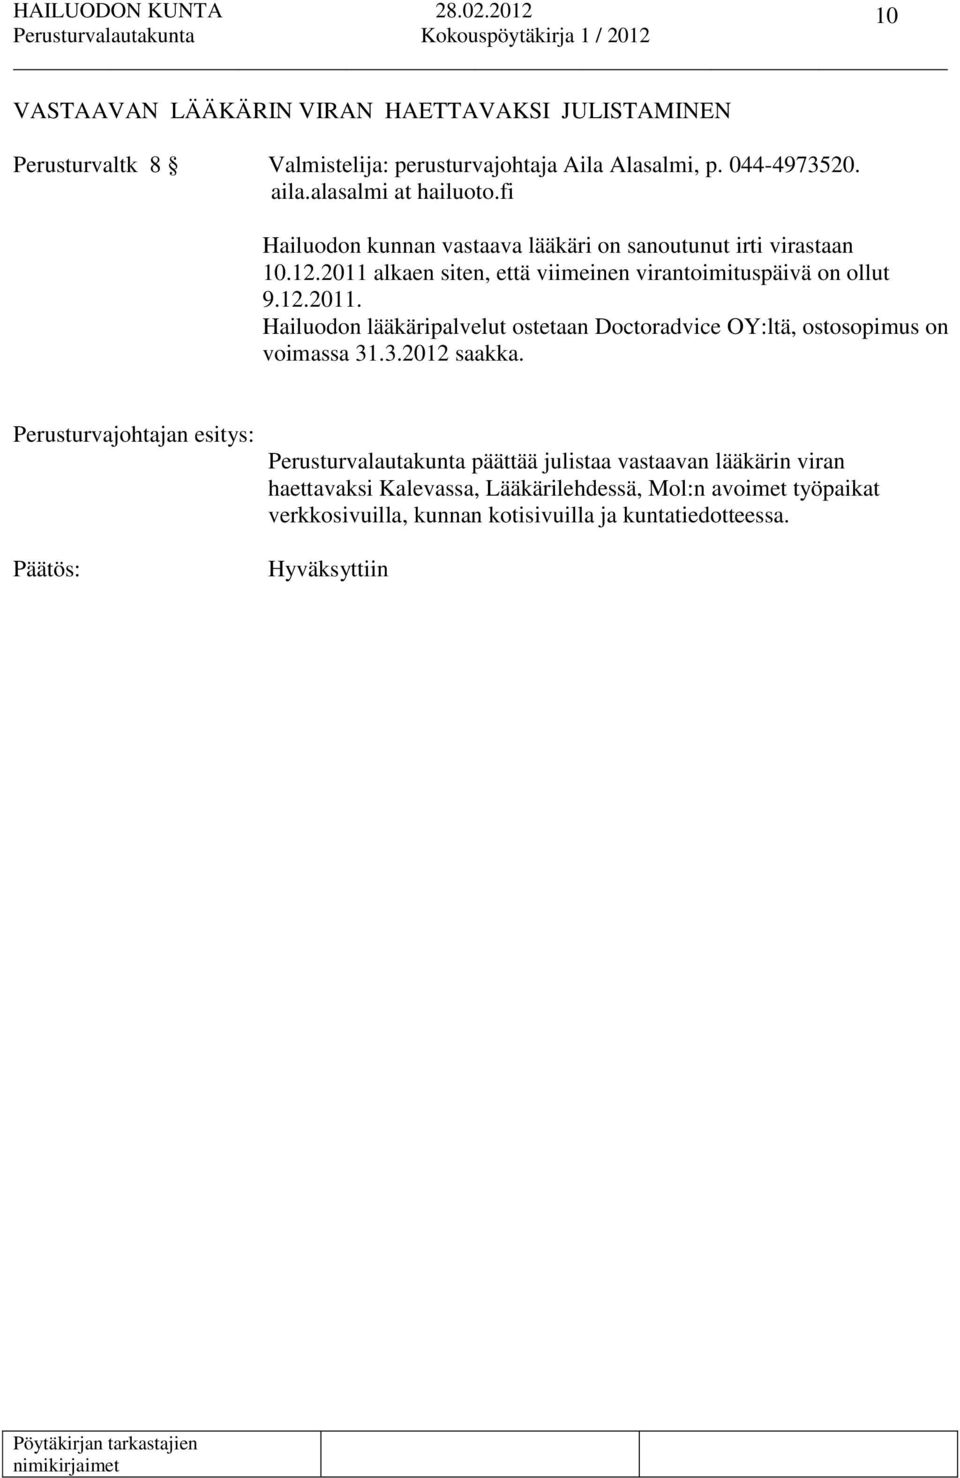 12.2011. Hailuodon lääkäripalvelut ostetaan Doctoradvice OY:ltä, ostosopimus on voimassa 31.3.2012 saakka.